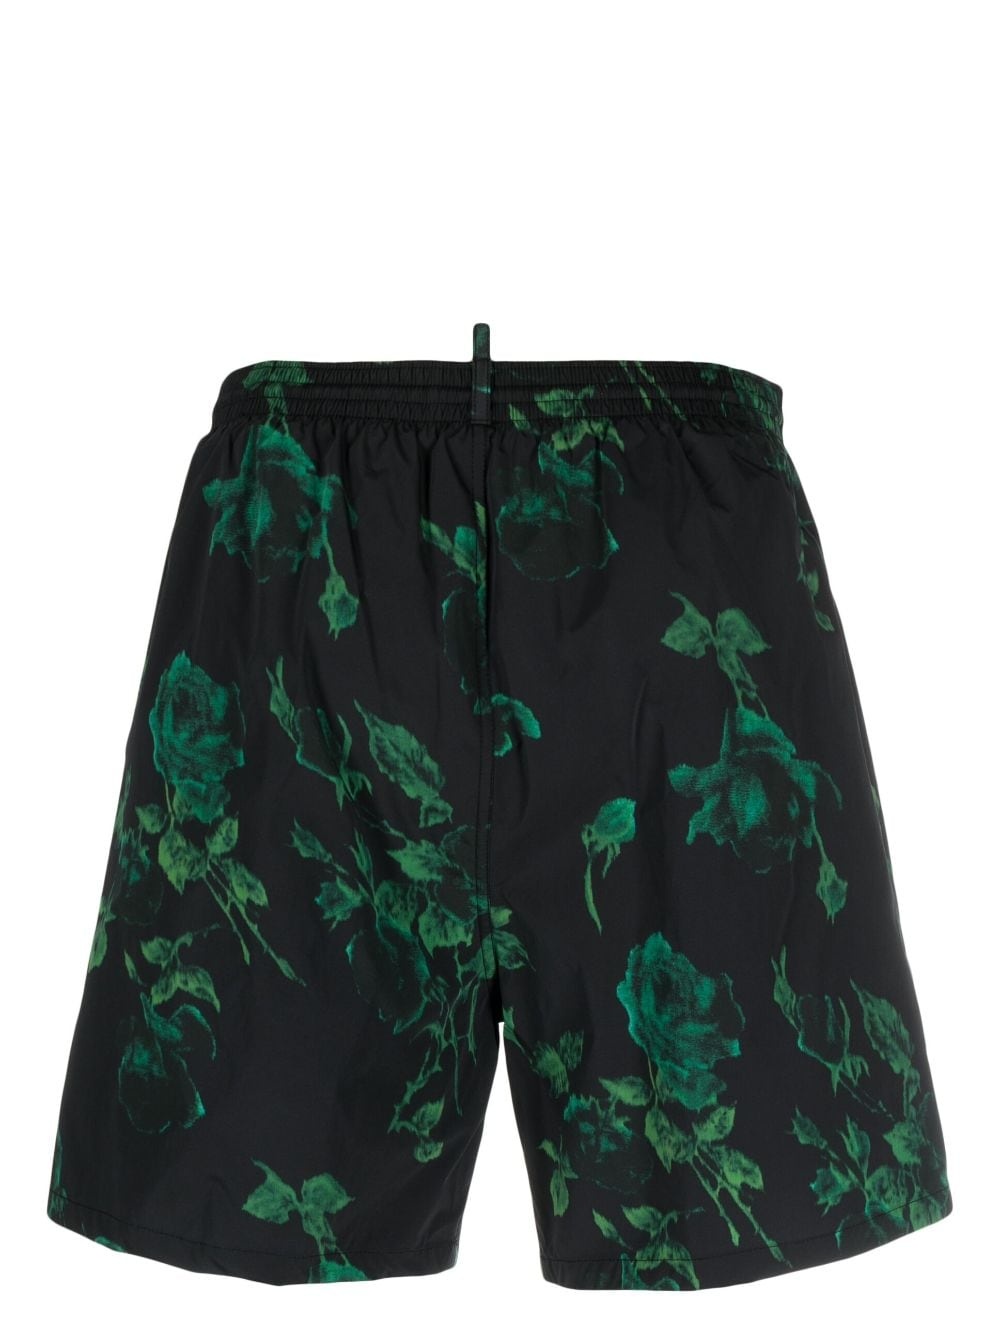 rose-print swim shorts - 2